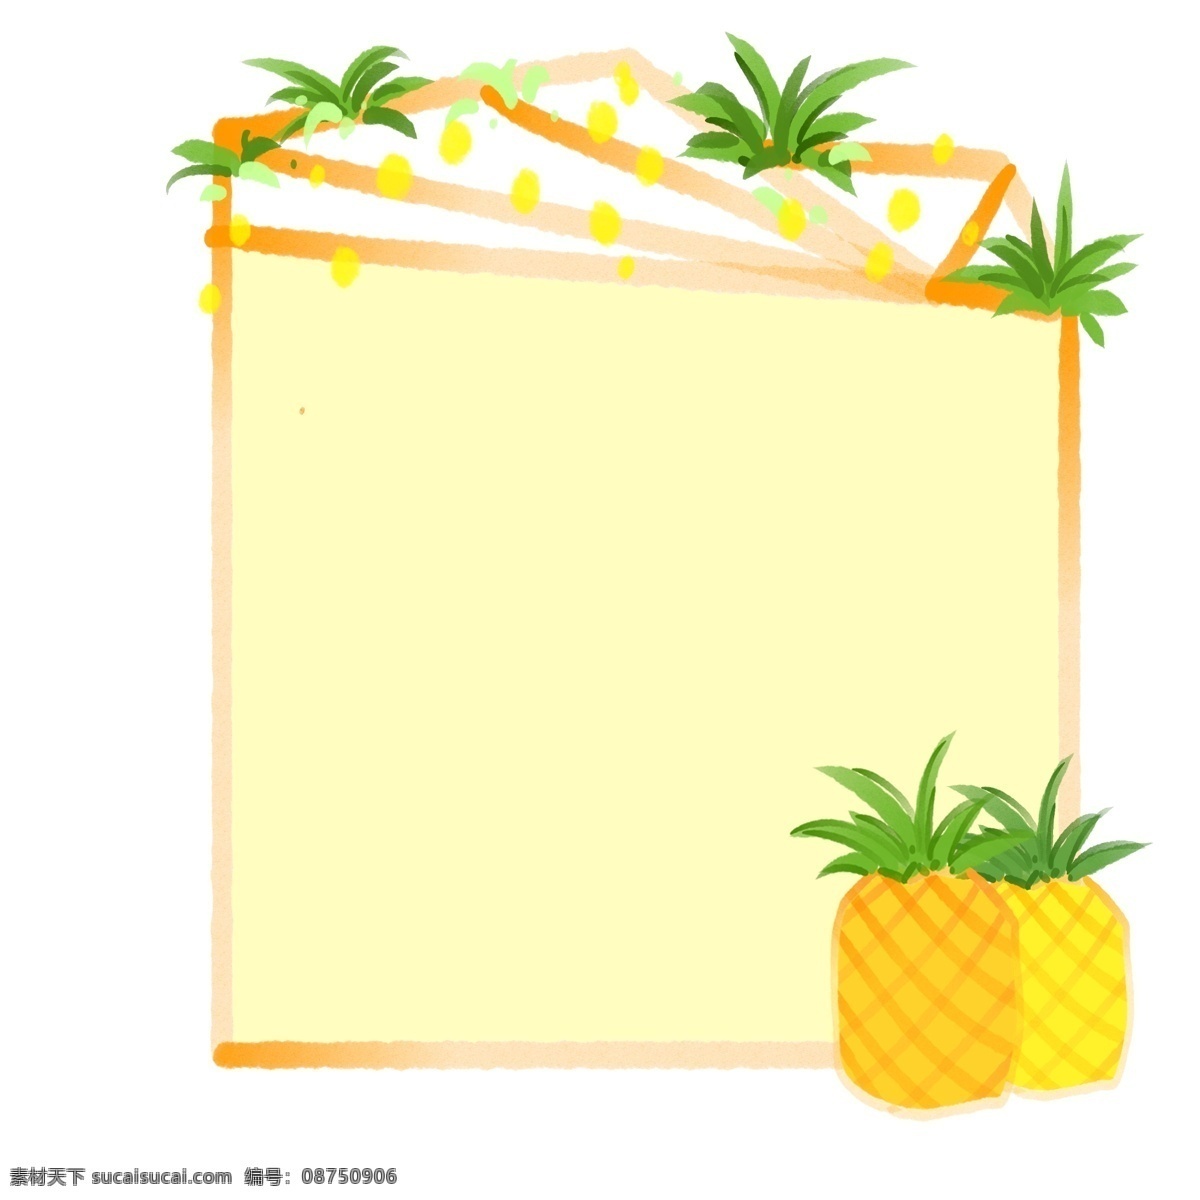 黄色 菠萝 边框 插画 水果边框 黄色装饰边框 卡通边框 边框插图 黄色菠萝边框 绿色玻璃叶 水果小框